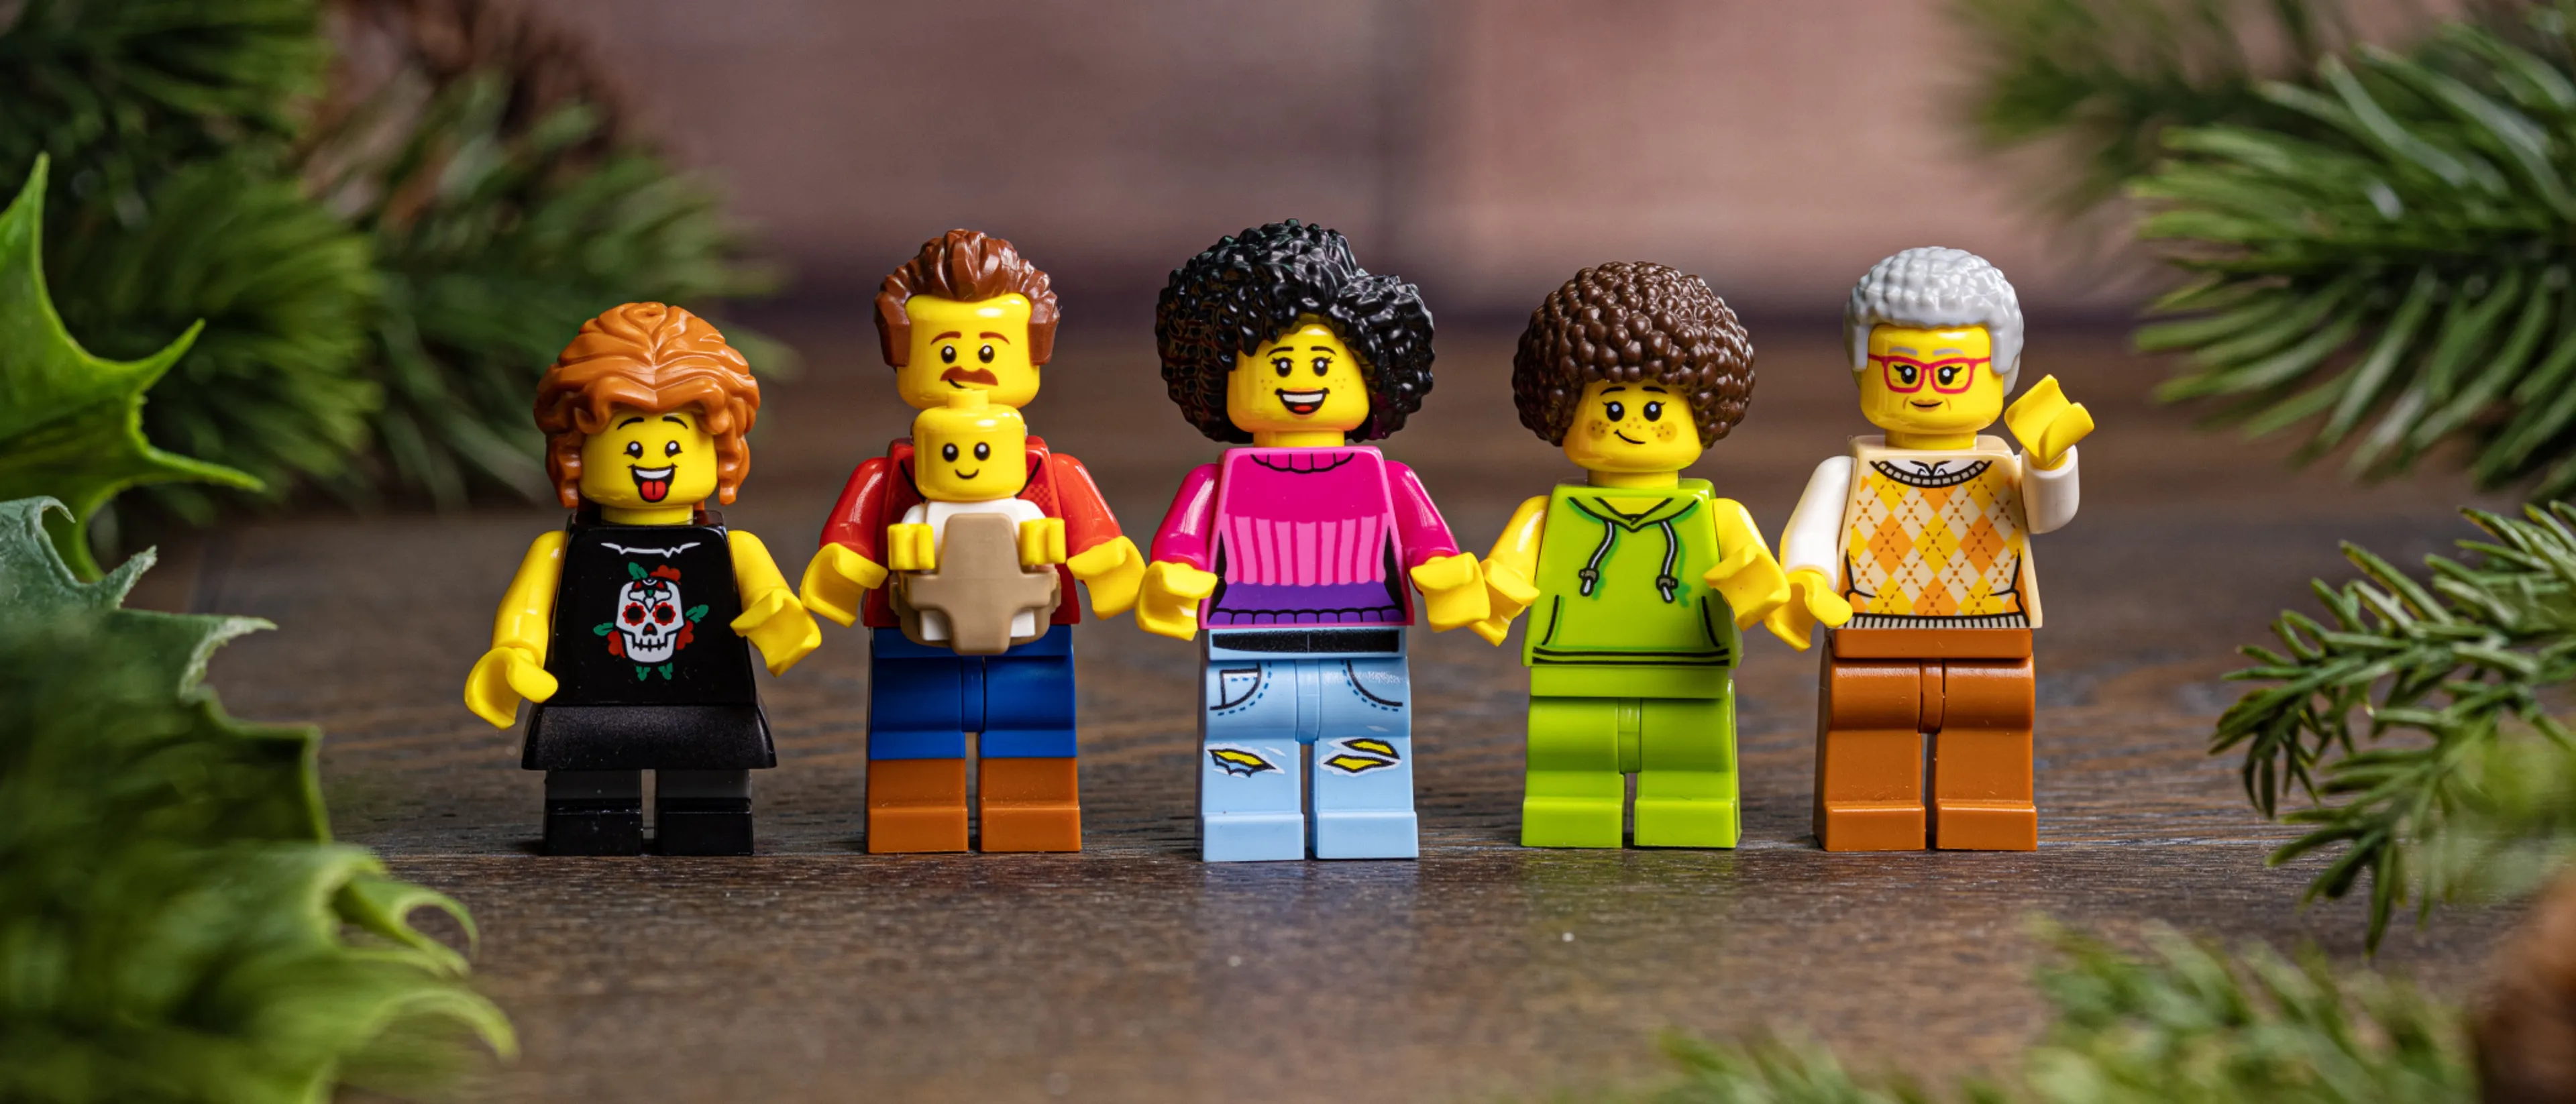 A LEGO minifigure family